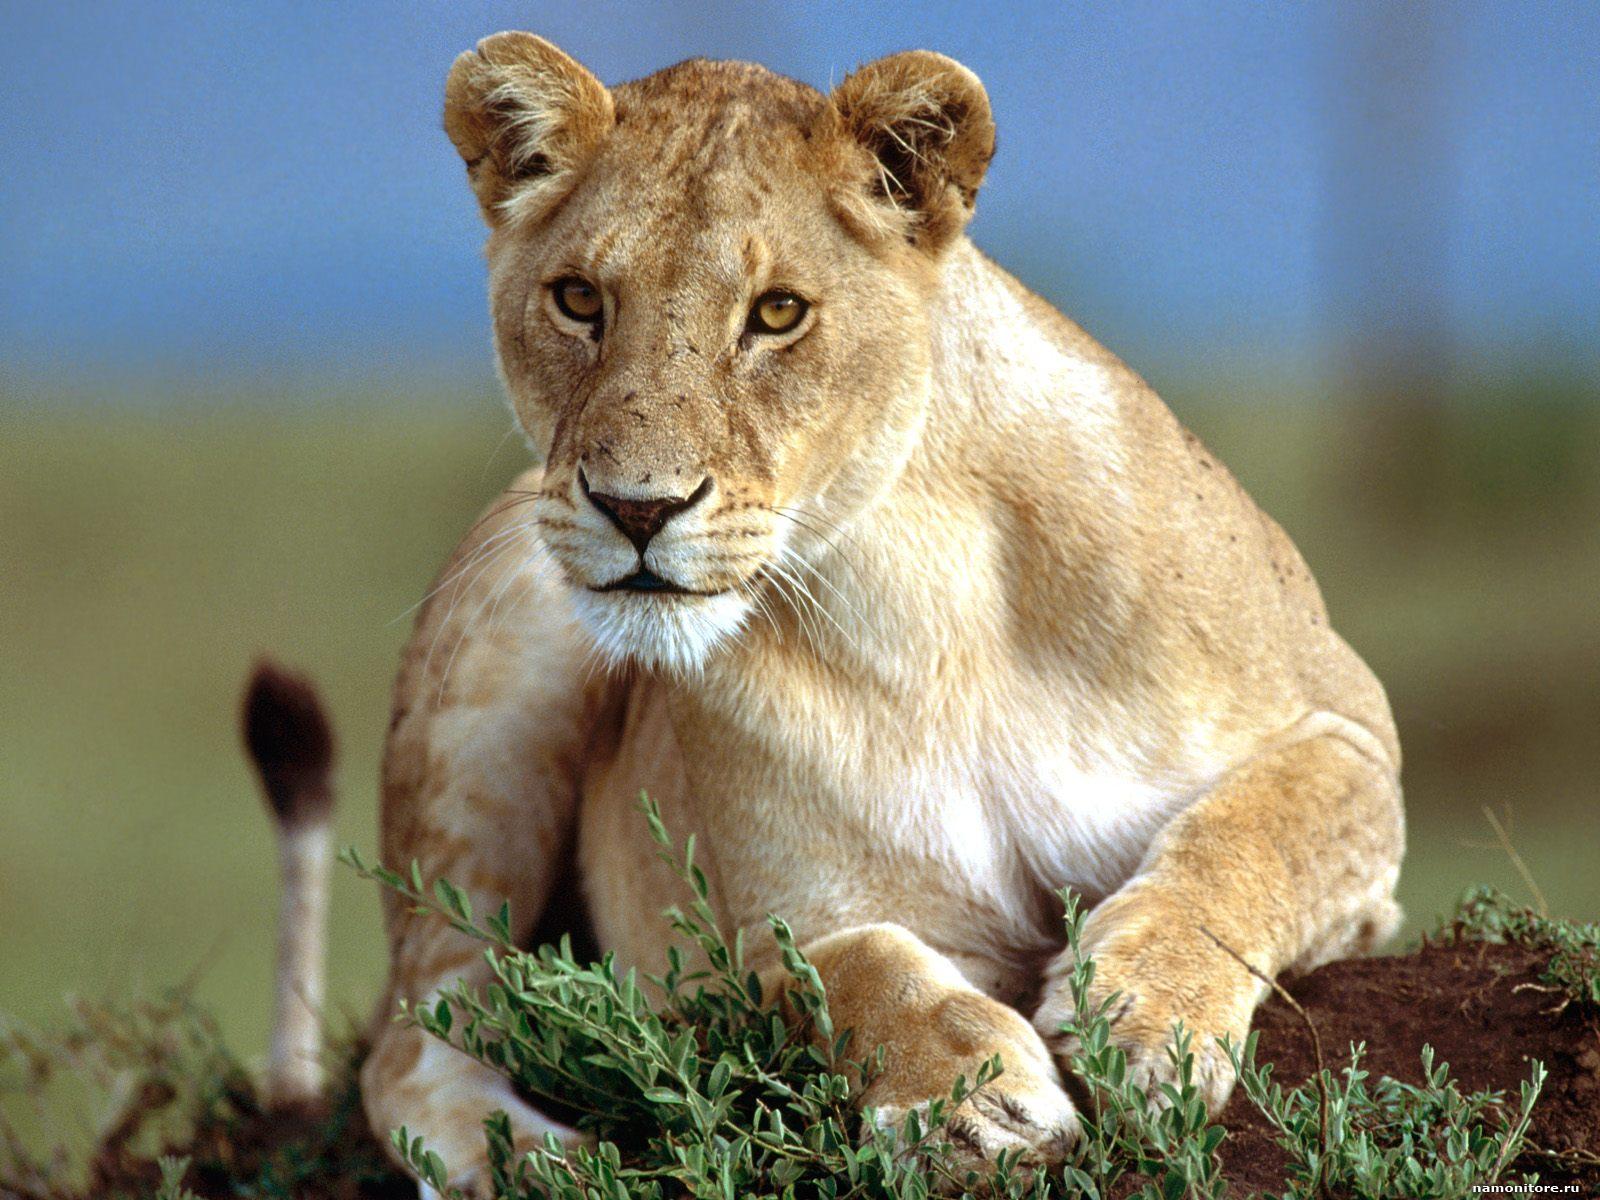 Foto af en løveinde